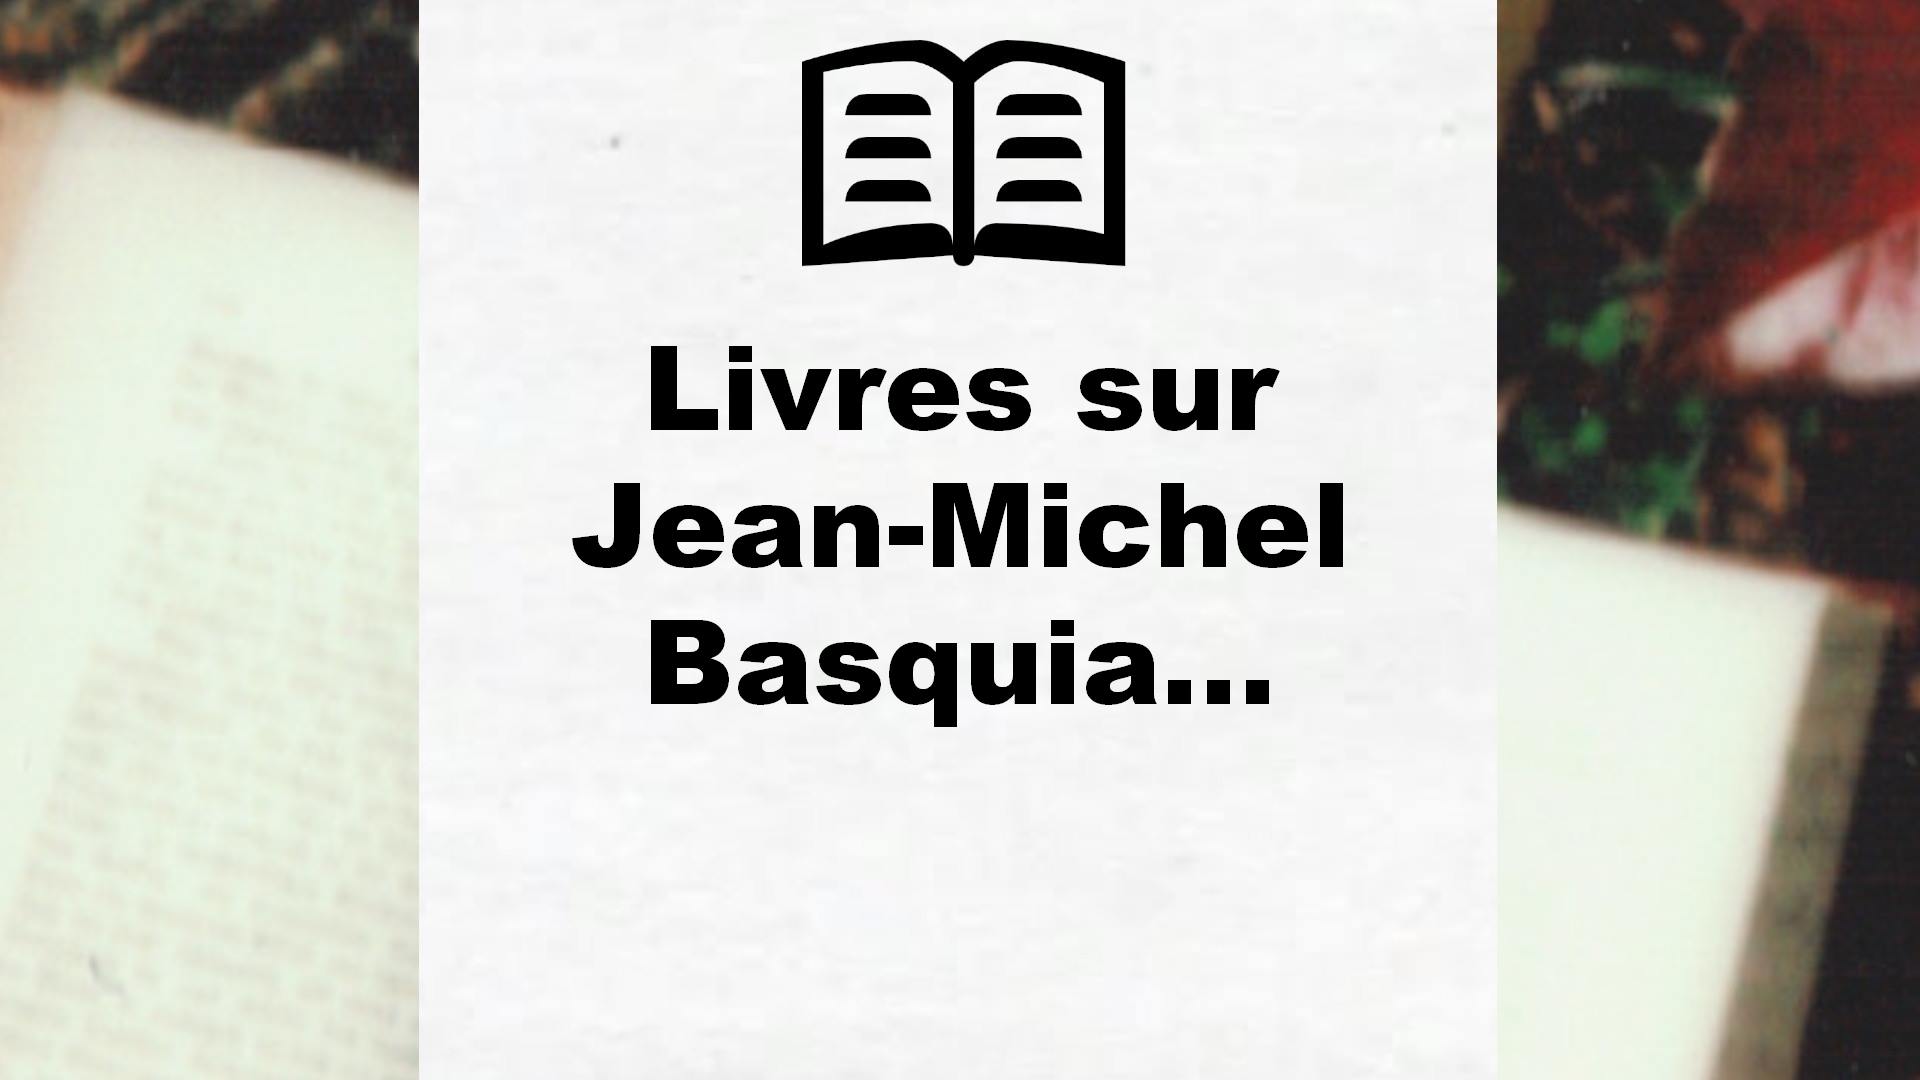 Livres sur Jean-Michel Basquiat